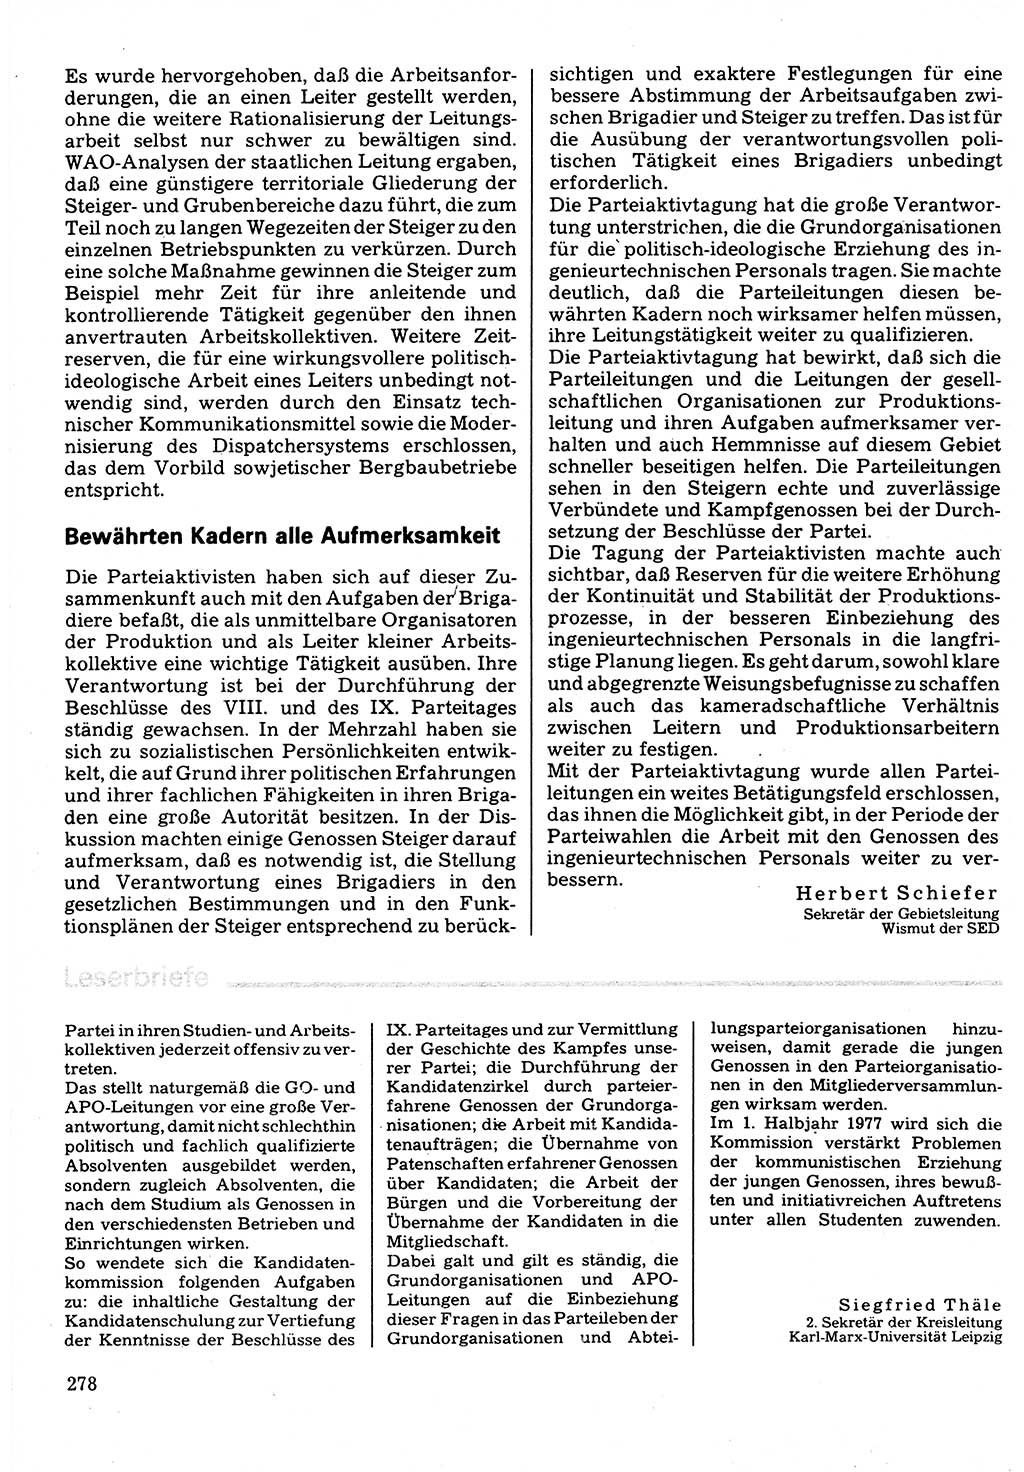 Neuer Weg (NW), Organ des Zentralkomitees (ZK) der SED (Sozialistische Einheitspartei Deutschlands) für Fragen des Parteilebens, 32. Jahrgang [Deutsche Demokratische Republik (DDR)] 1977, Seite 278 (NW ZK SED DDR 1977, S. 278)